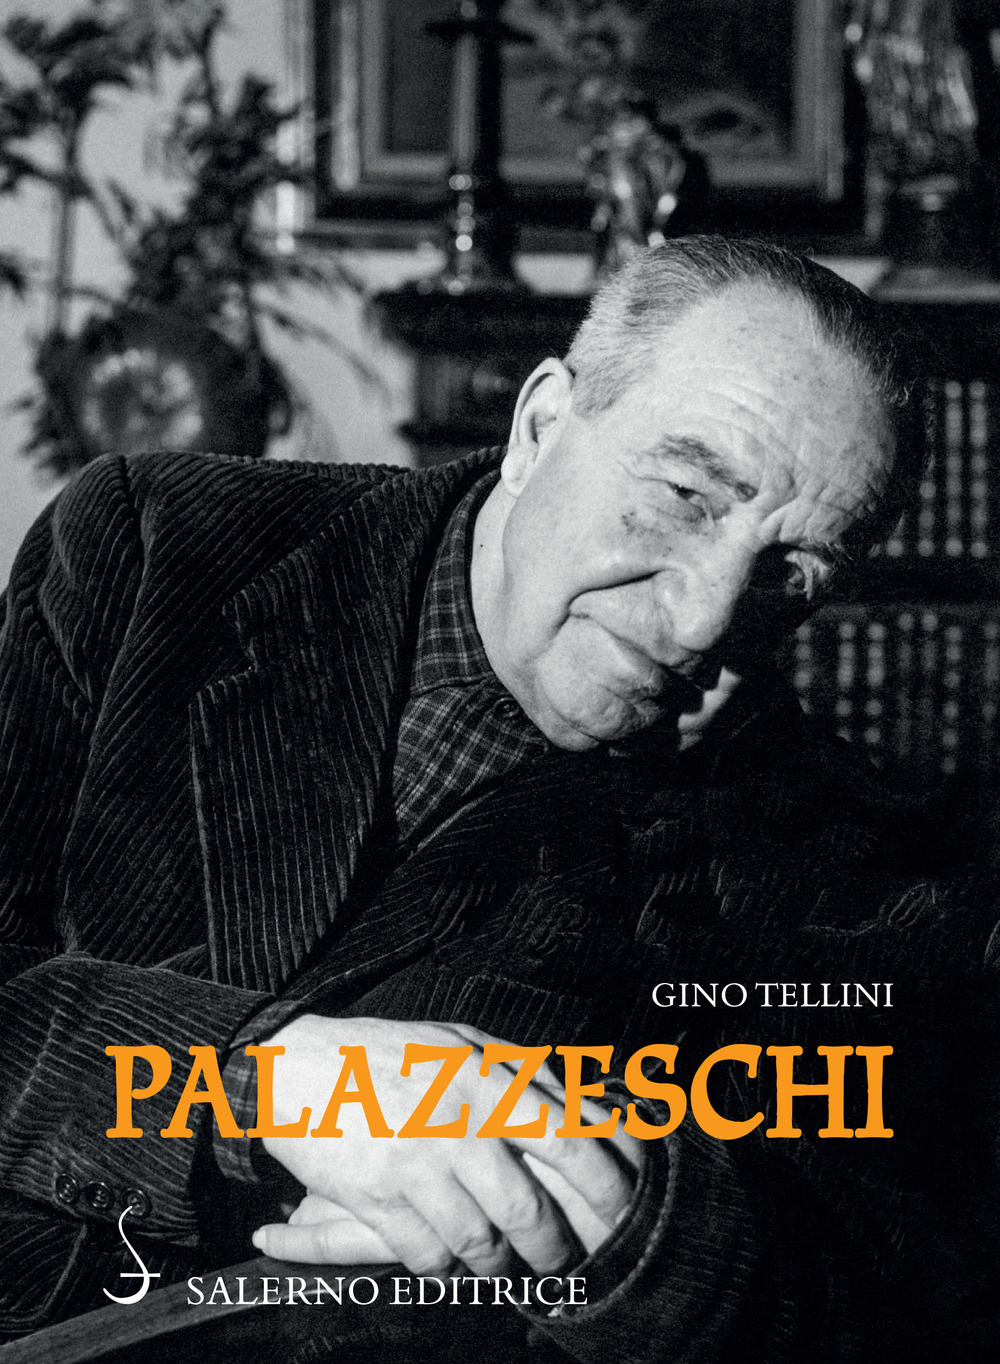 Libri Gino Tellini - Palazzeschi NUOVO SIGILLATO, EDIZIONE DEL 22/07/2021 SUBITO DISPONIBILE